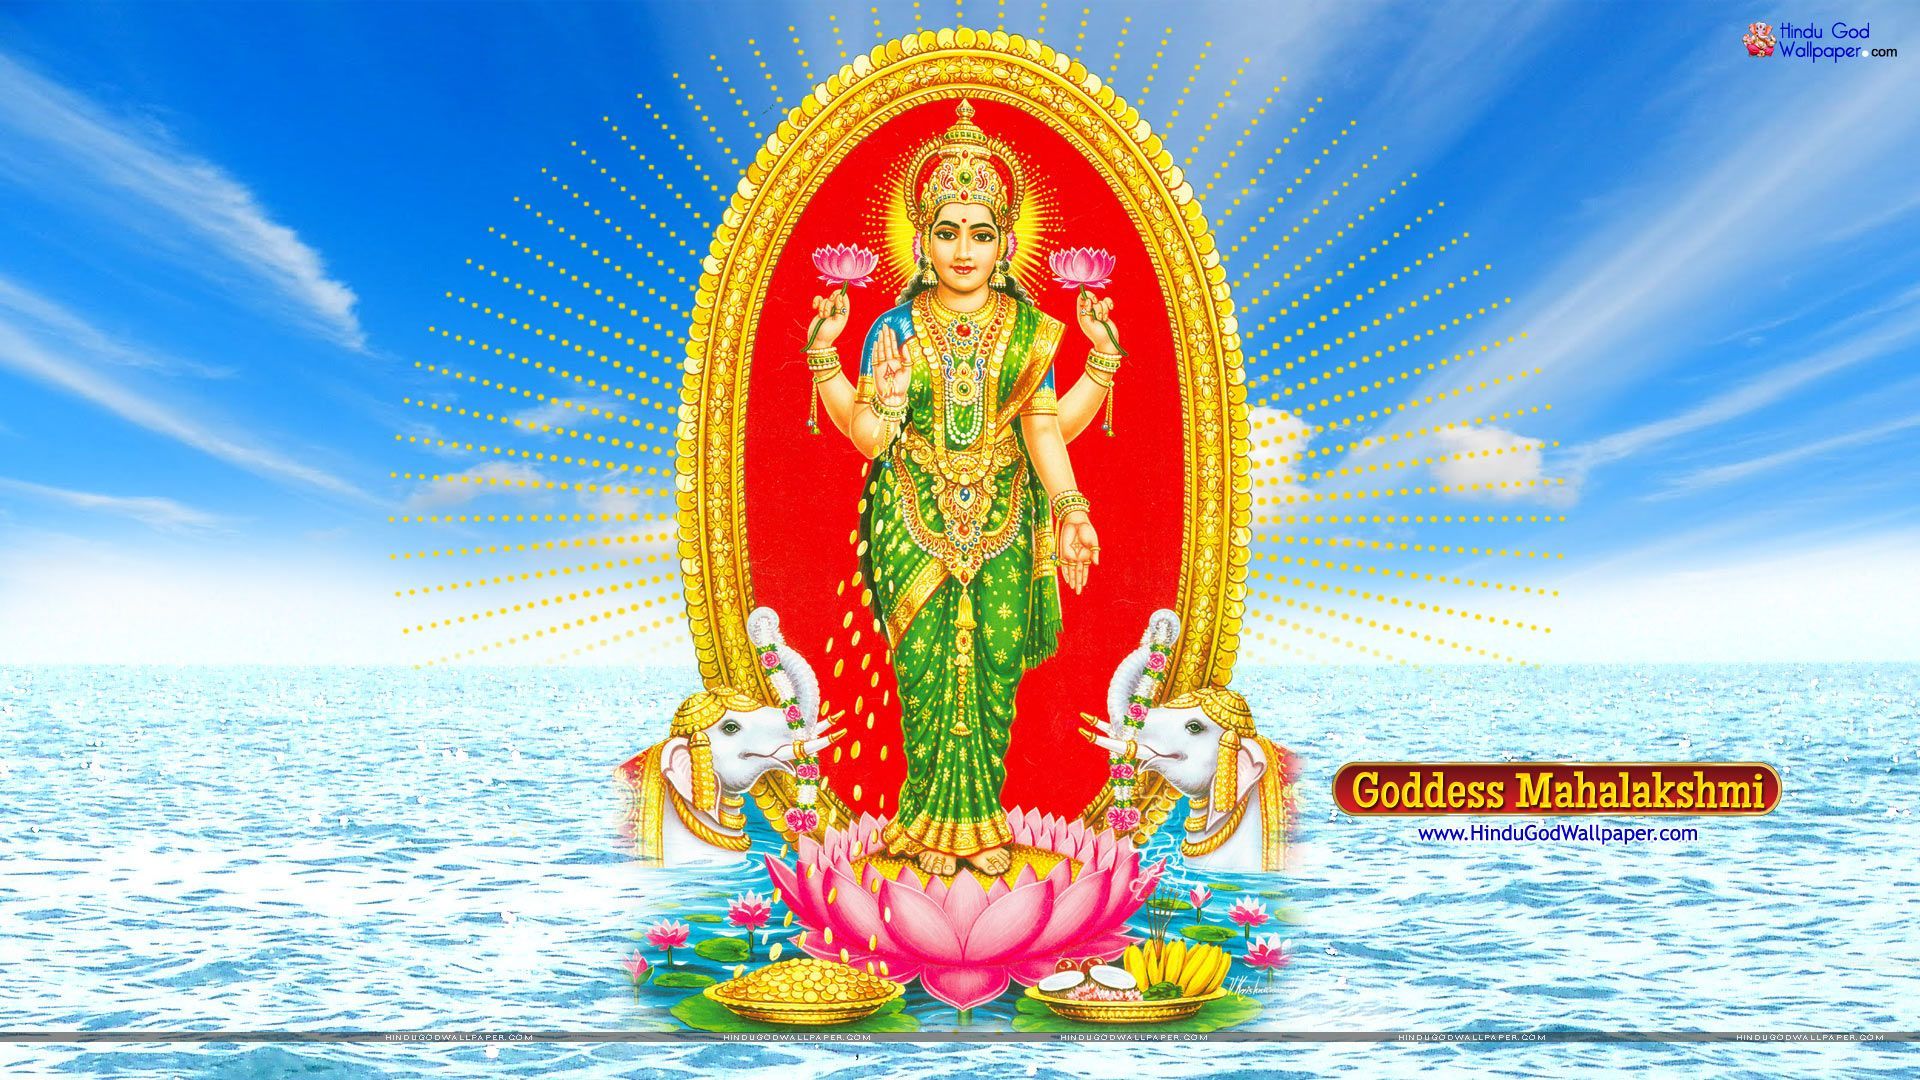 Mahalakshmi HD Wallpaper Free Download. Wallpaper free download